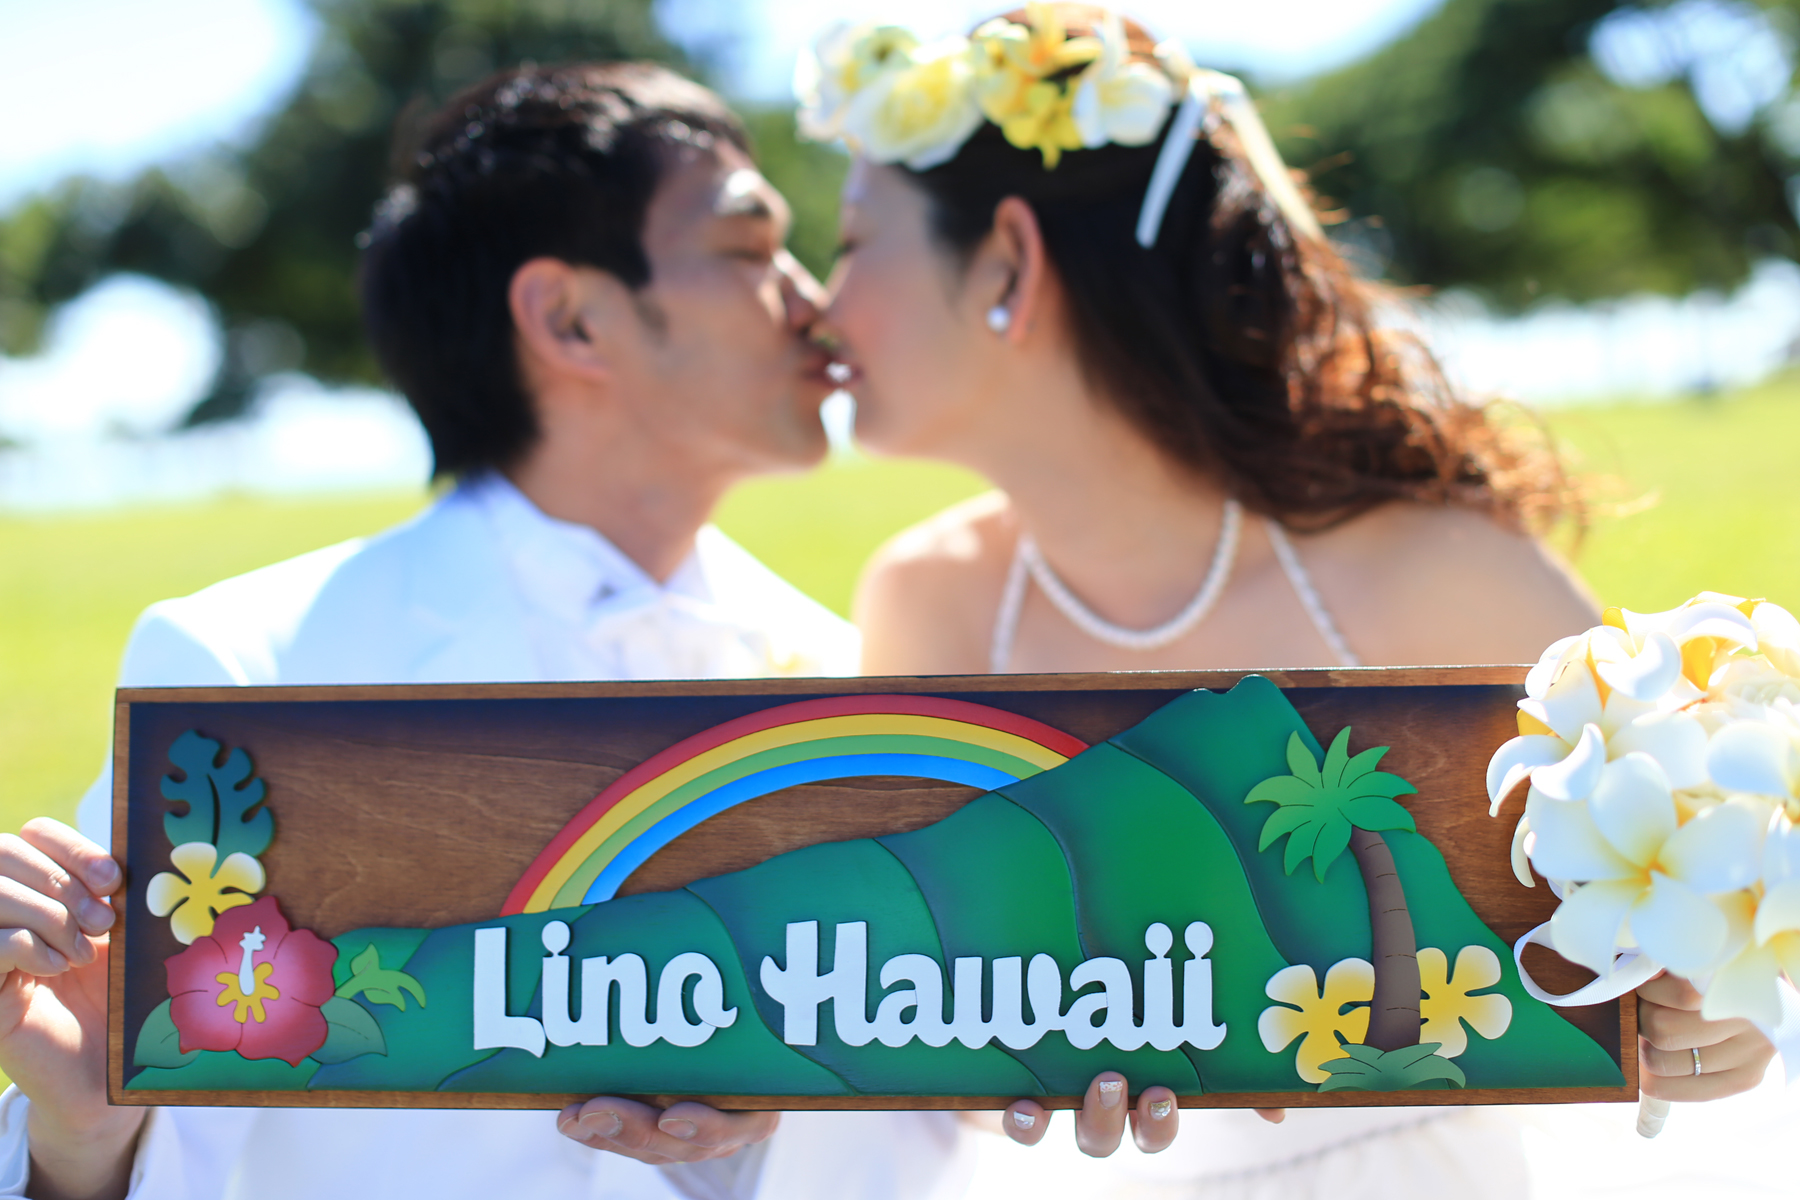 初ハワイ,不安,リノハワイウェディングお客様の声,ハワイ婚,上手なカメラマン